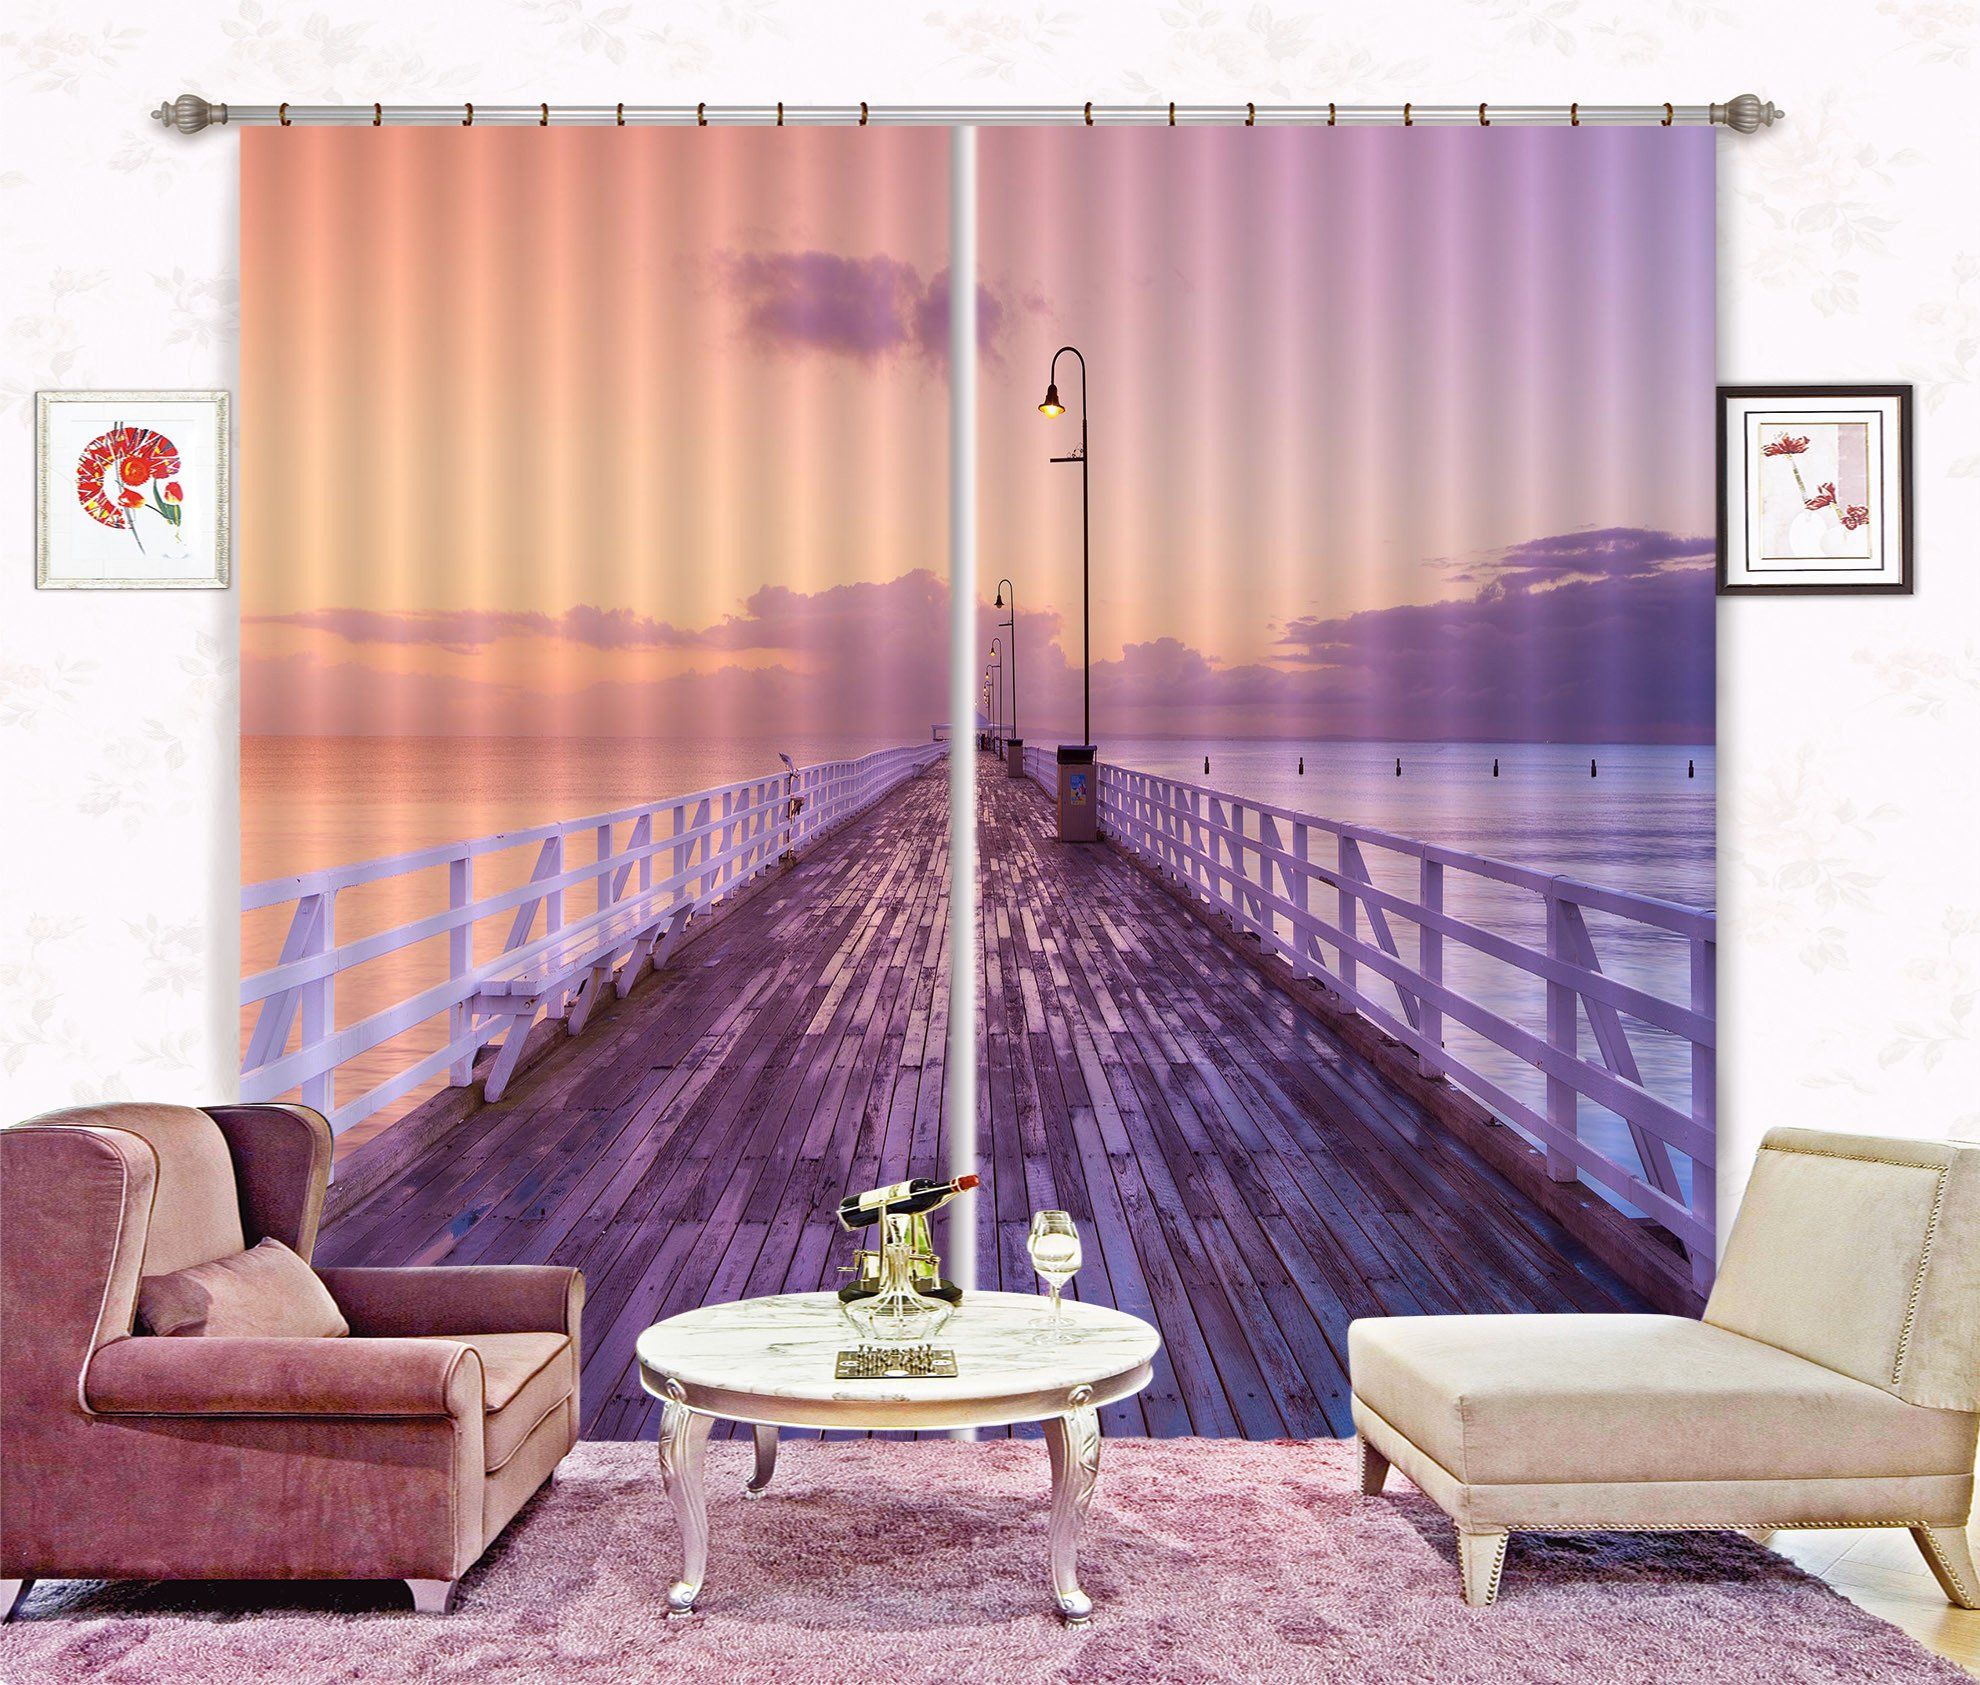 3D Sea Wooden Corridor 231 Curtains Drapes Wallpaper AJ Wallpaper 